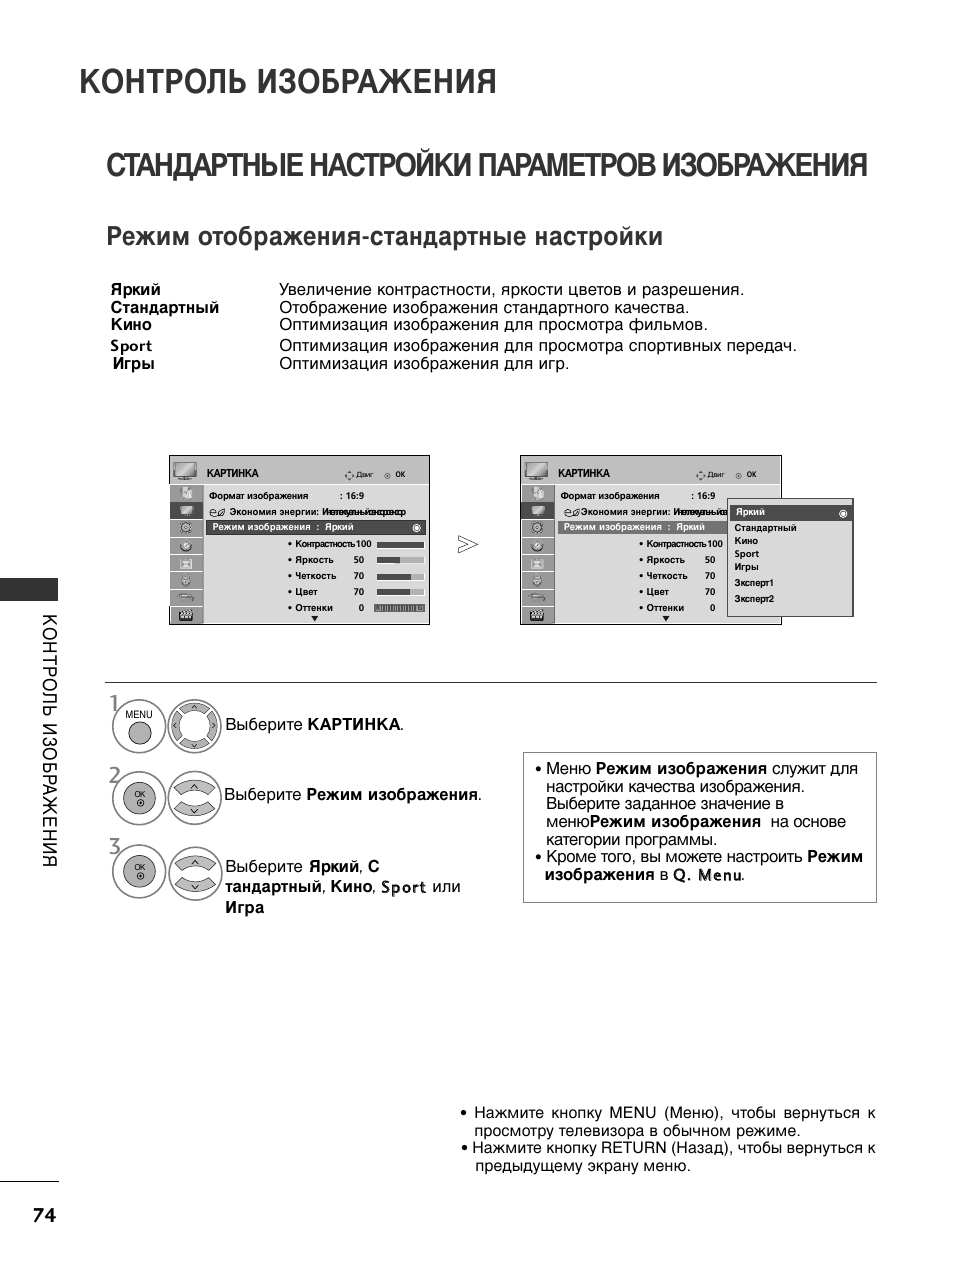 Стандартные настройки параметров изображения, Контроль изображения, Режим отображения-стандартные настройки | Инструкция по эксплуатации LG 50PS3000 | Страница 76 / 124